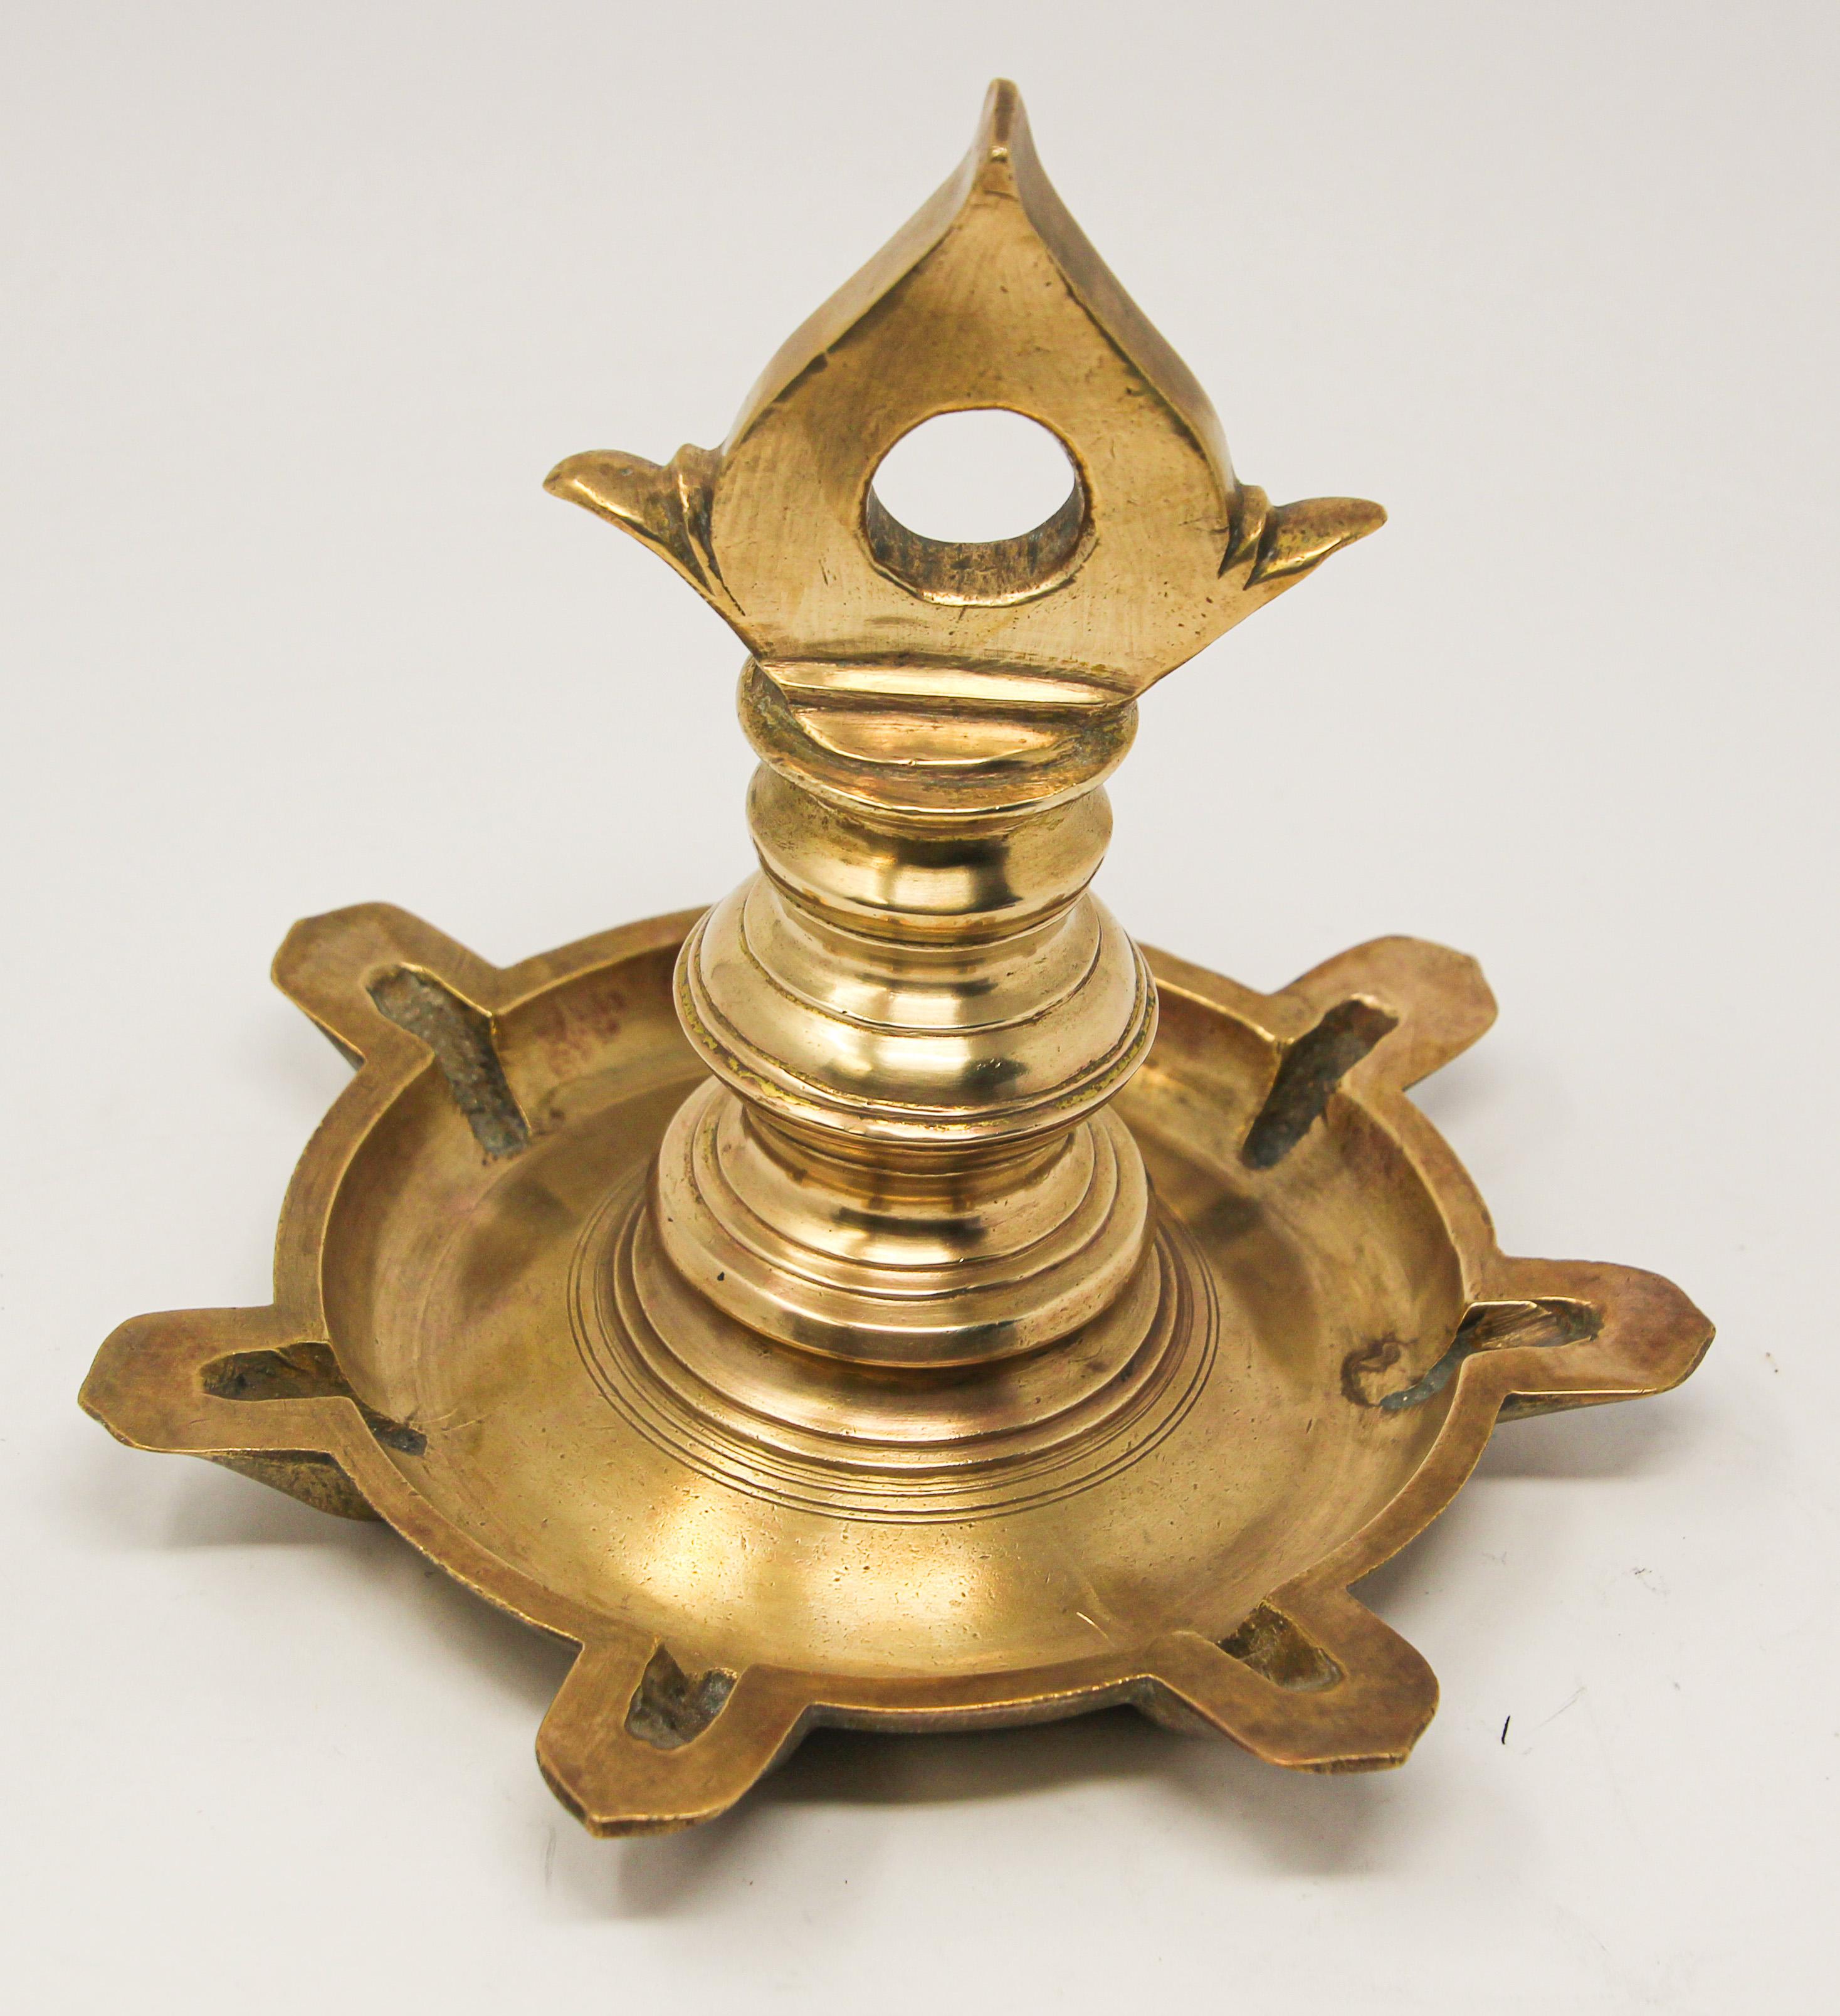 Traditionelle religiöse Diya-Tempel-Öllampe aus Messingguss, die zum Gebet verwendet wird.
Flache Schale mit sieben Bati-Tüllen.
Eine 